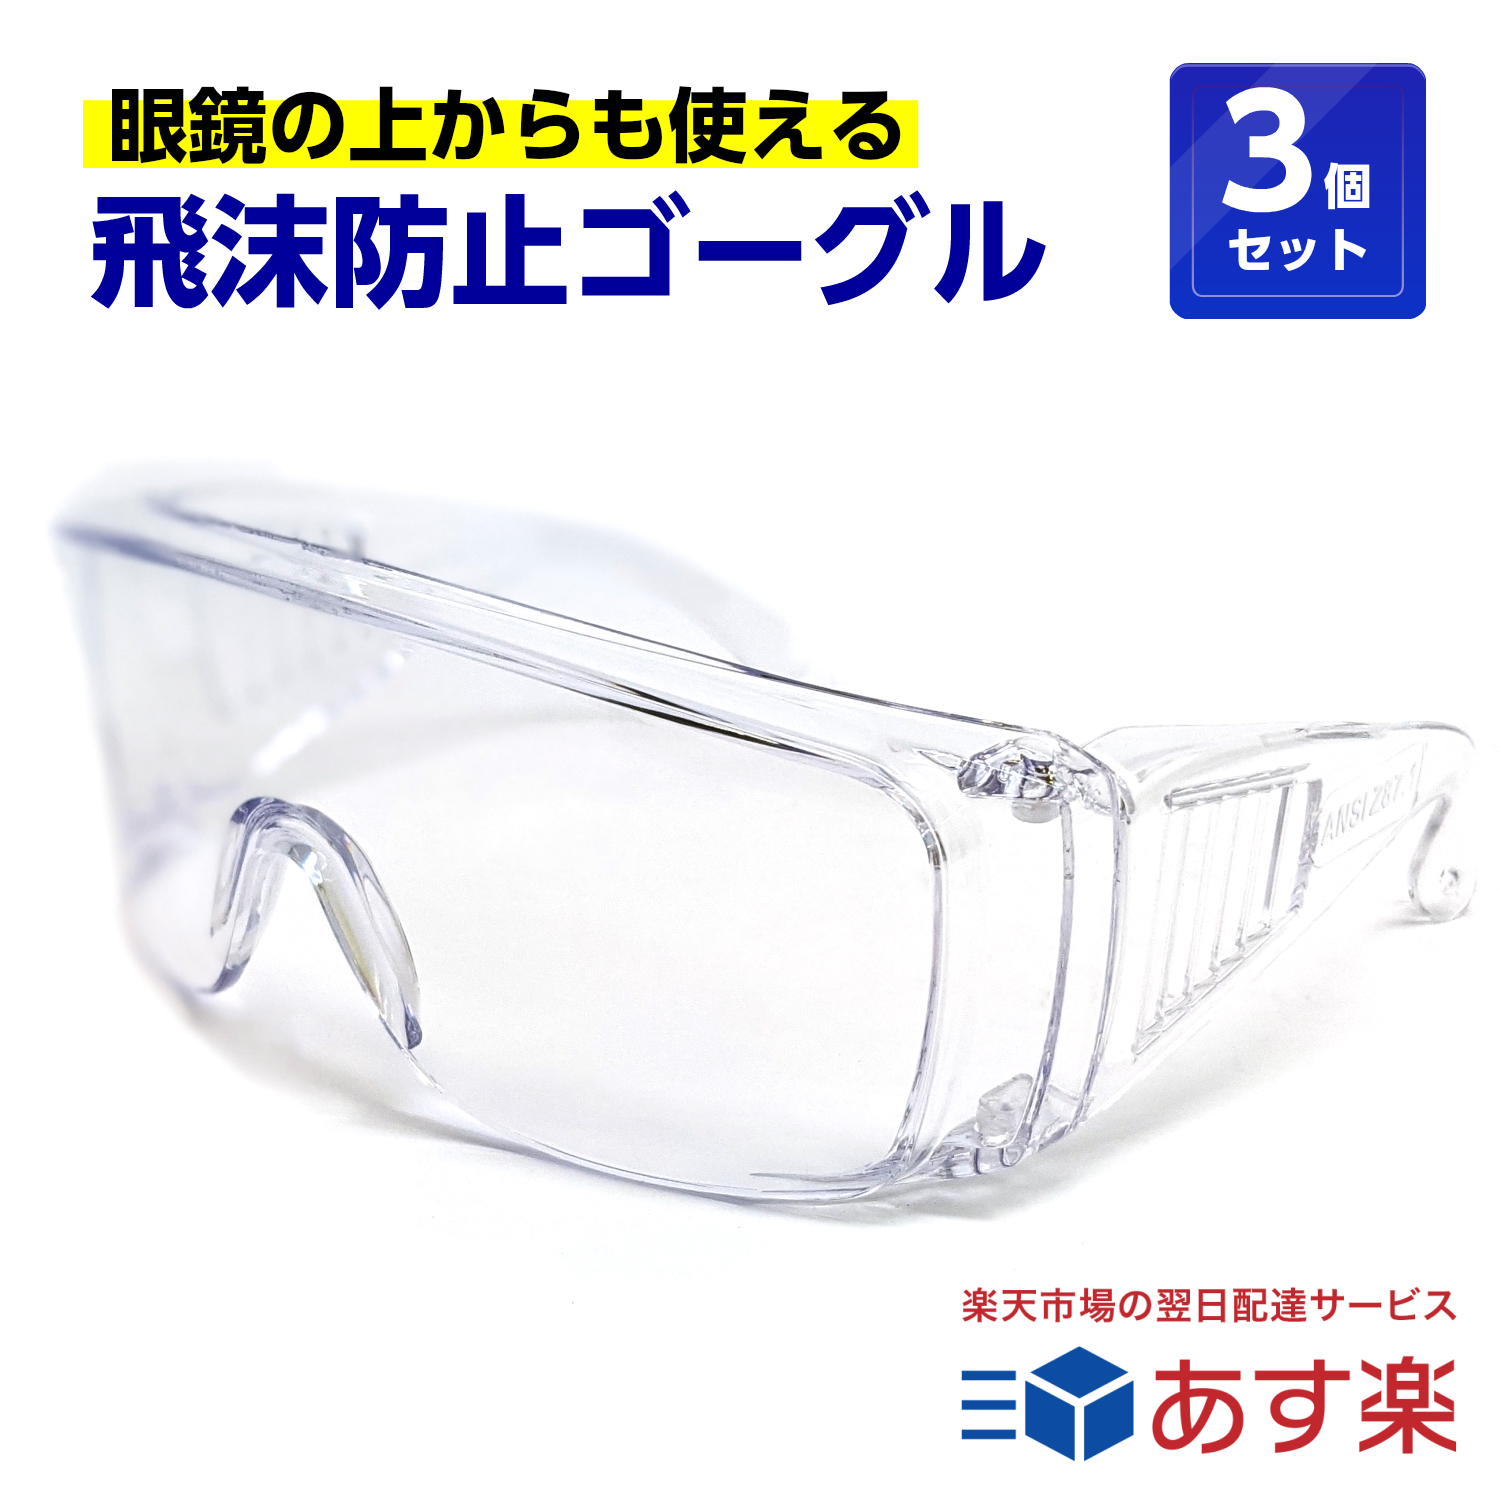 保護 予防 衛生 医療従事者 保安担当 工事 工作 メガネ 3個セット 医療 くもらないセフティグラス 眼鏡の上から使えます rsl 超目玉 特価キャンペーン 介護 保護メガネ 飛沫防止 tkh